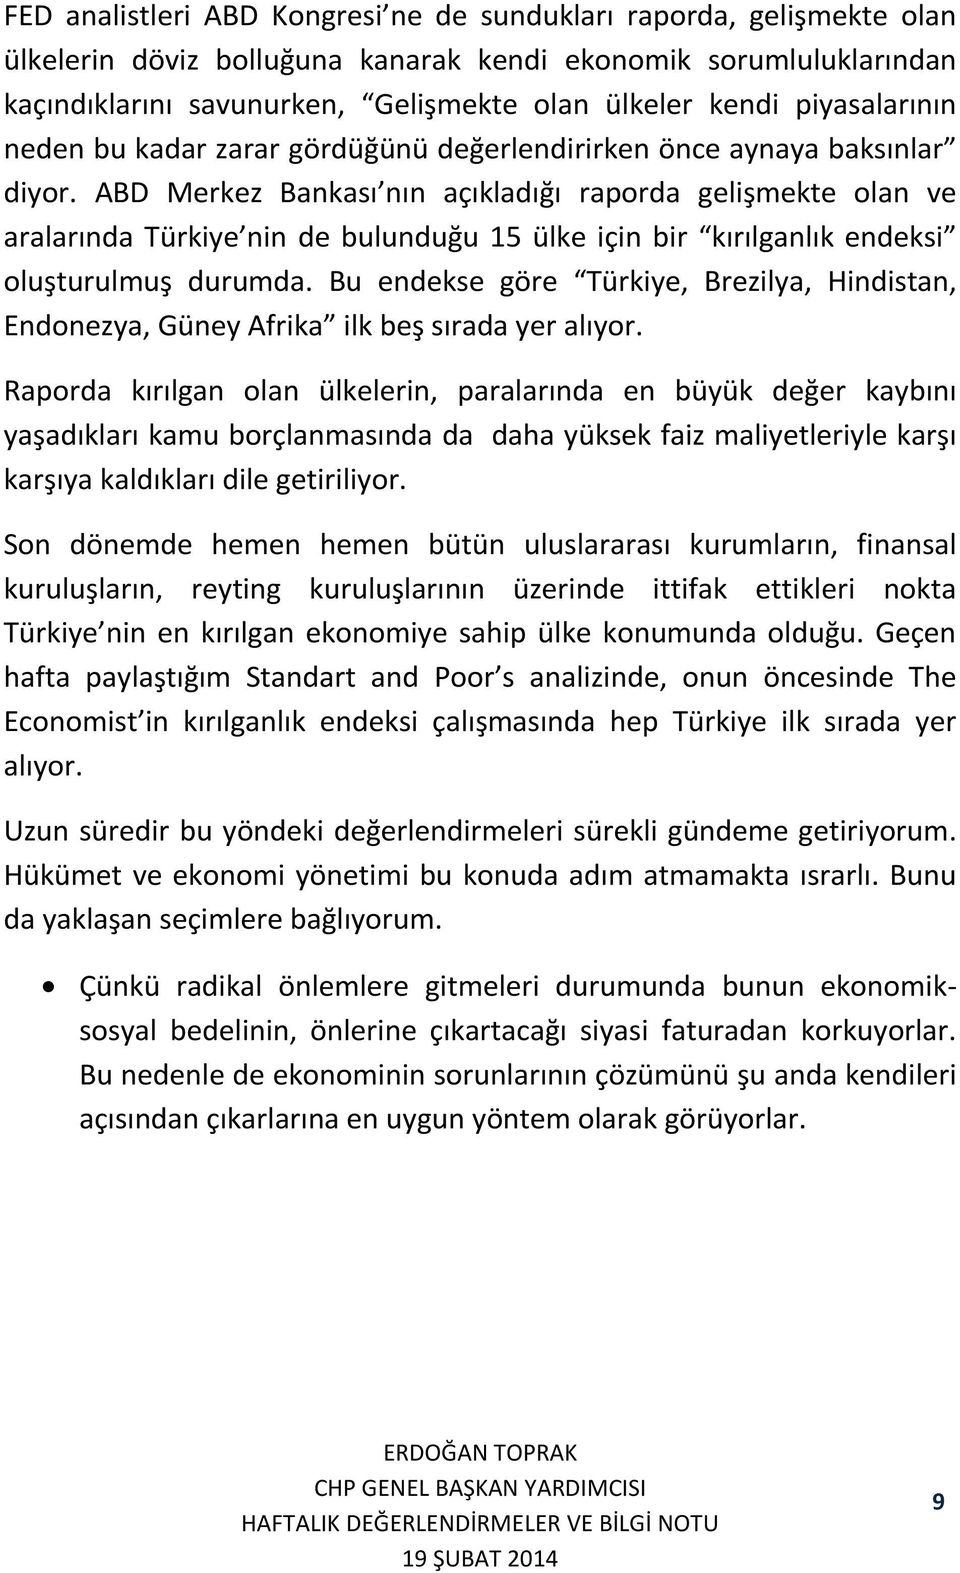 ABD Merkez Bankası nın açıkladığı raporda gelişmekte olan ve aralarında Türkiye nin de bulunduğu 15 ülke için bir kırılganlık endeksi oluşturulmuş durumda.